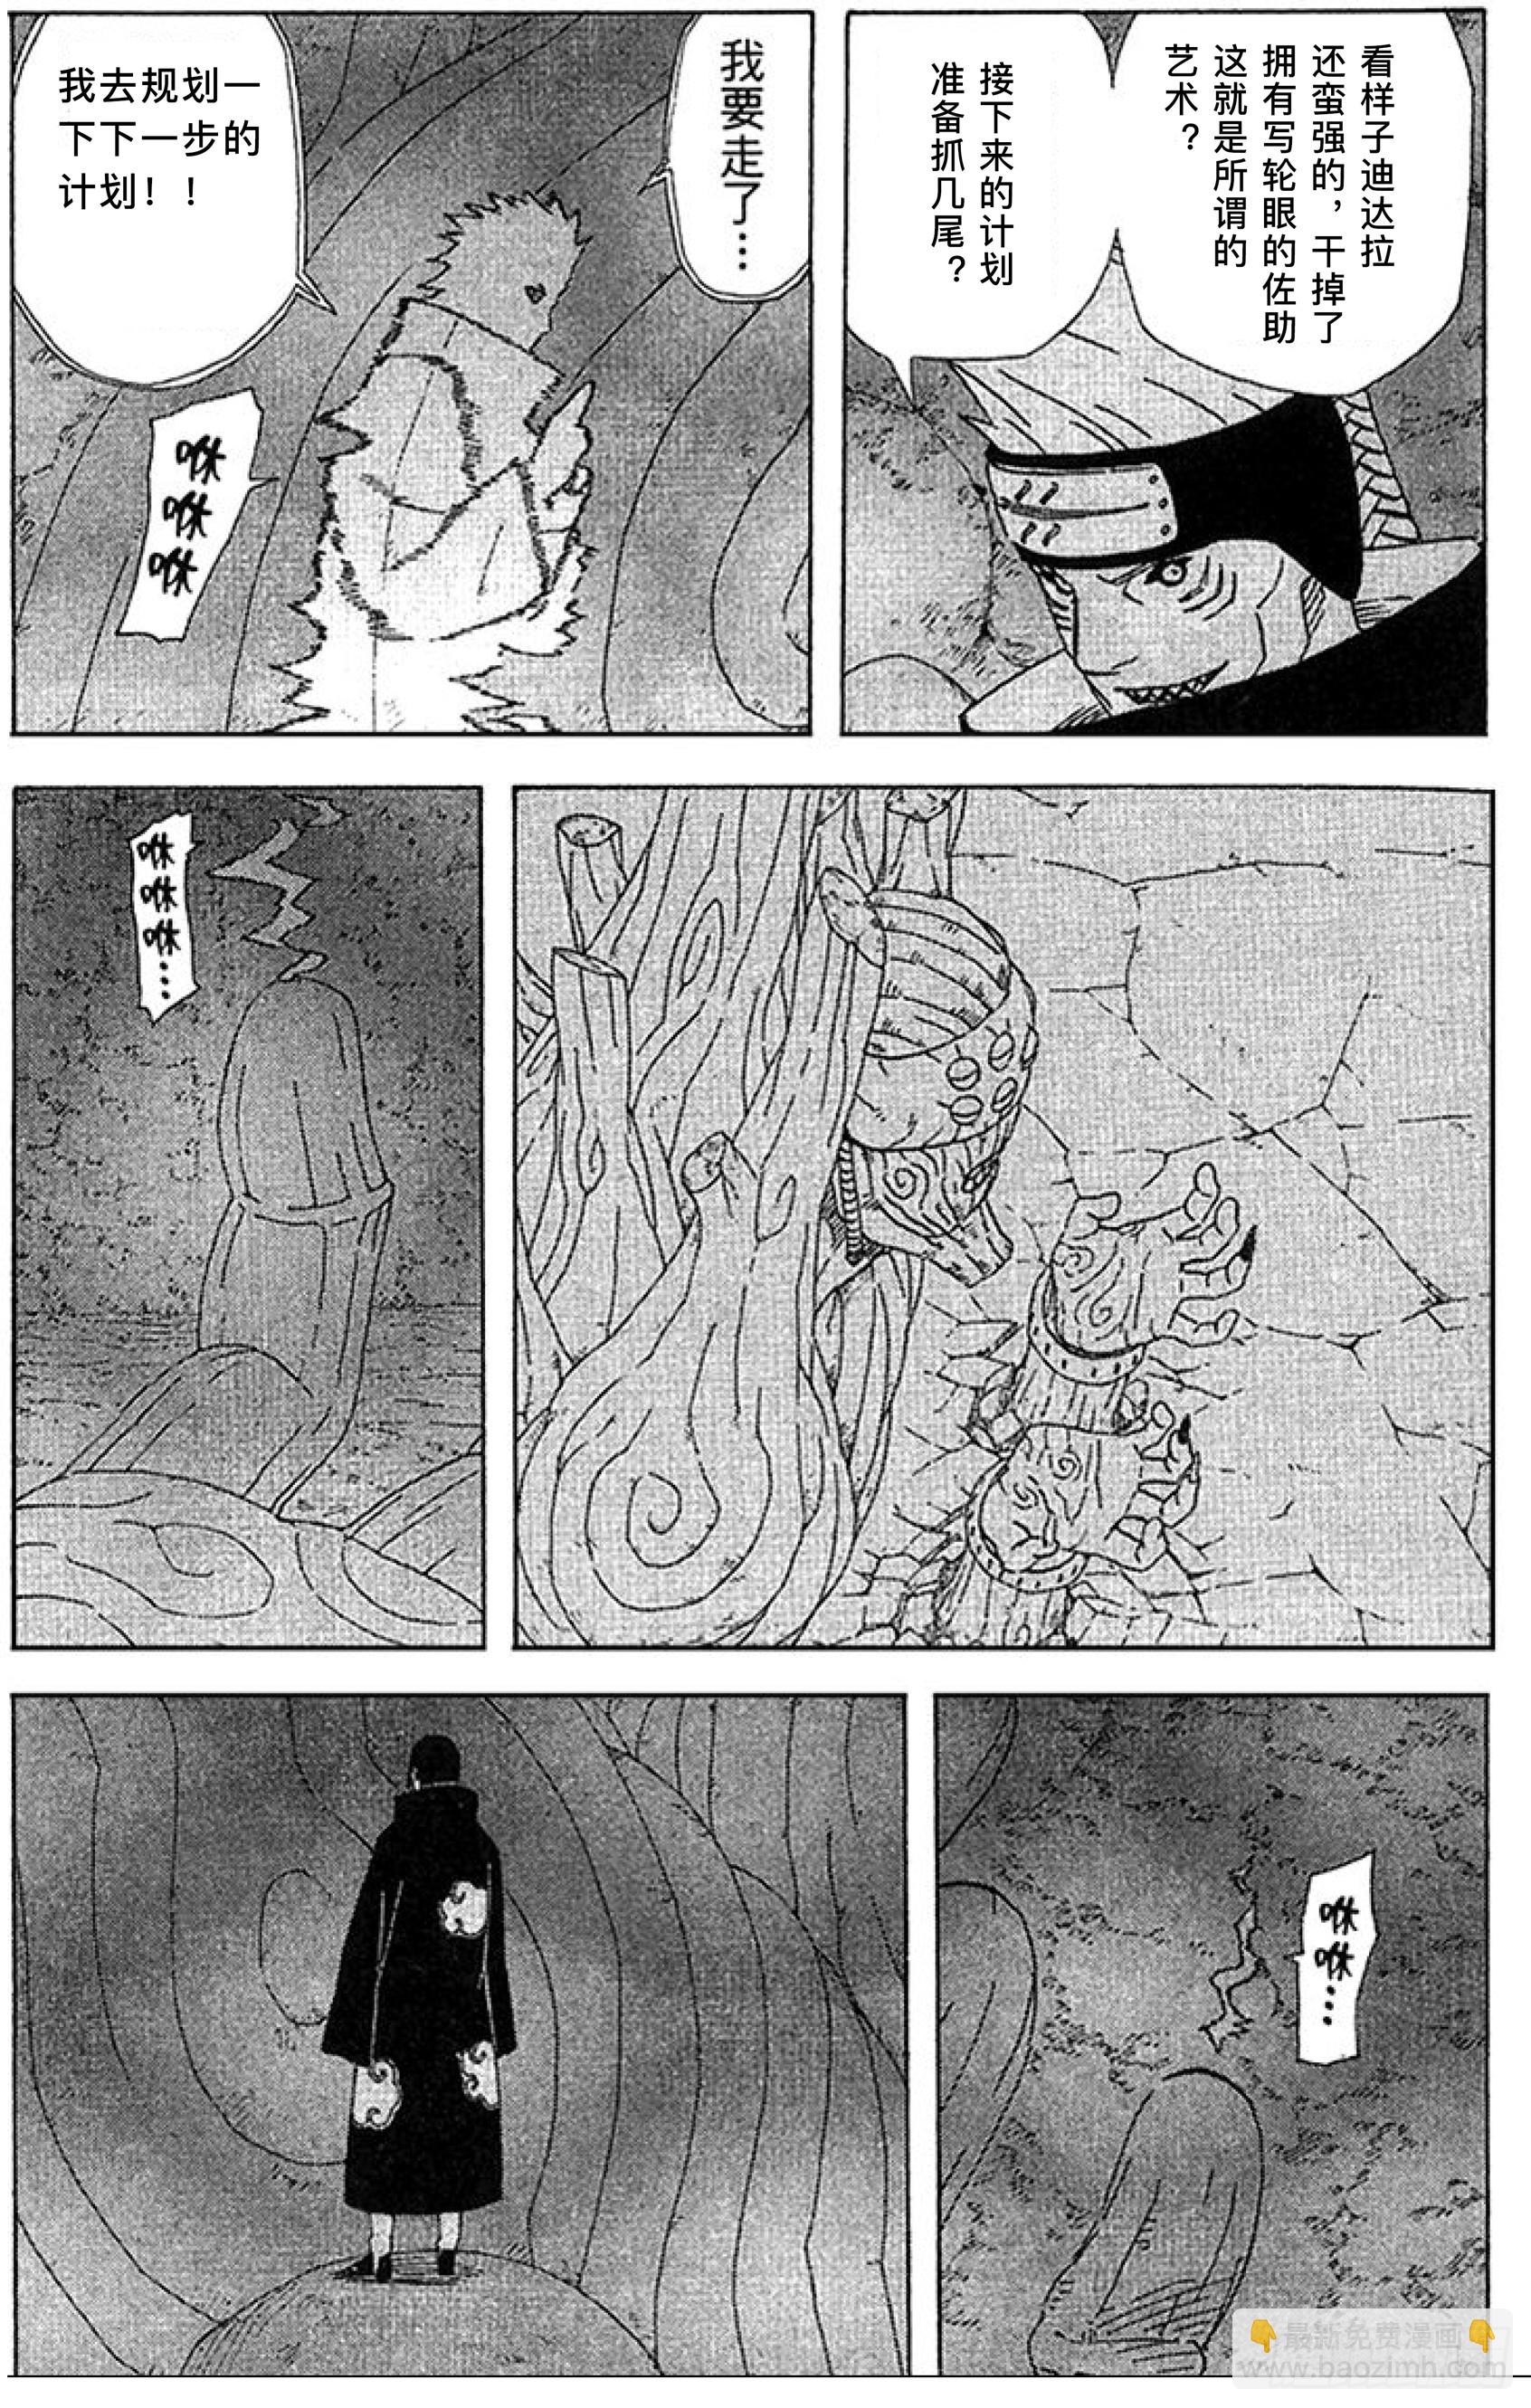 火影忍者番外篇 - 迪達拉VS宇智波鼬 - 3